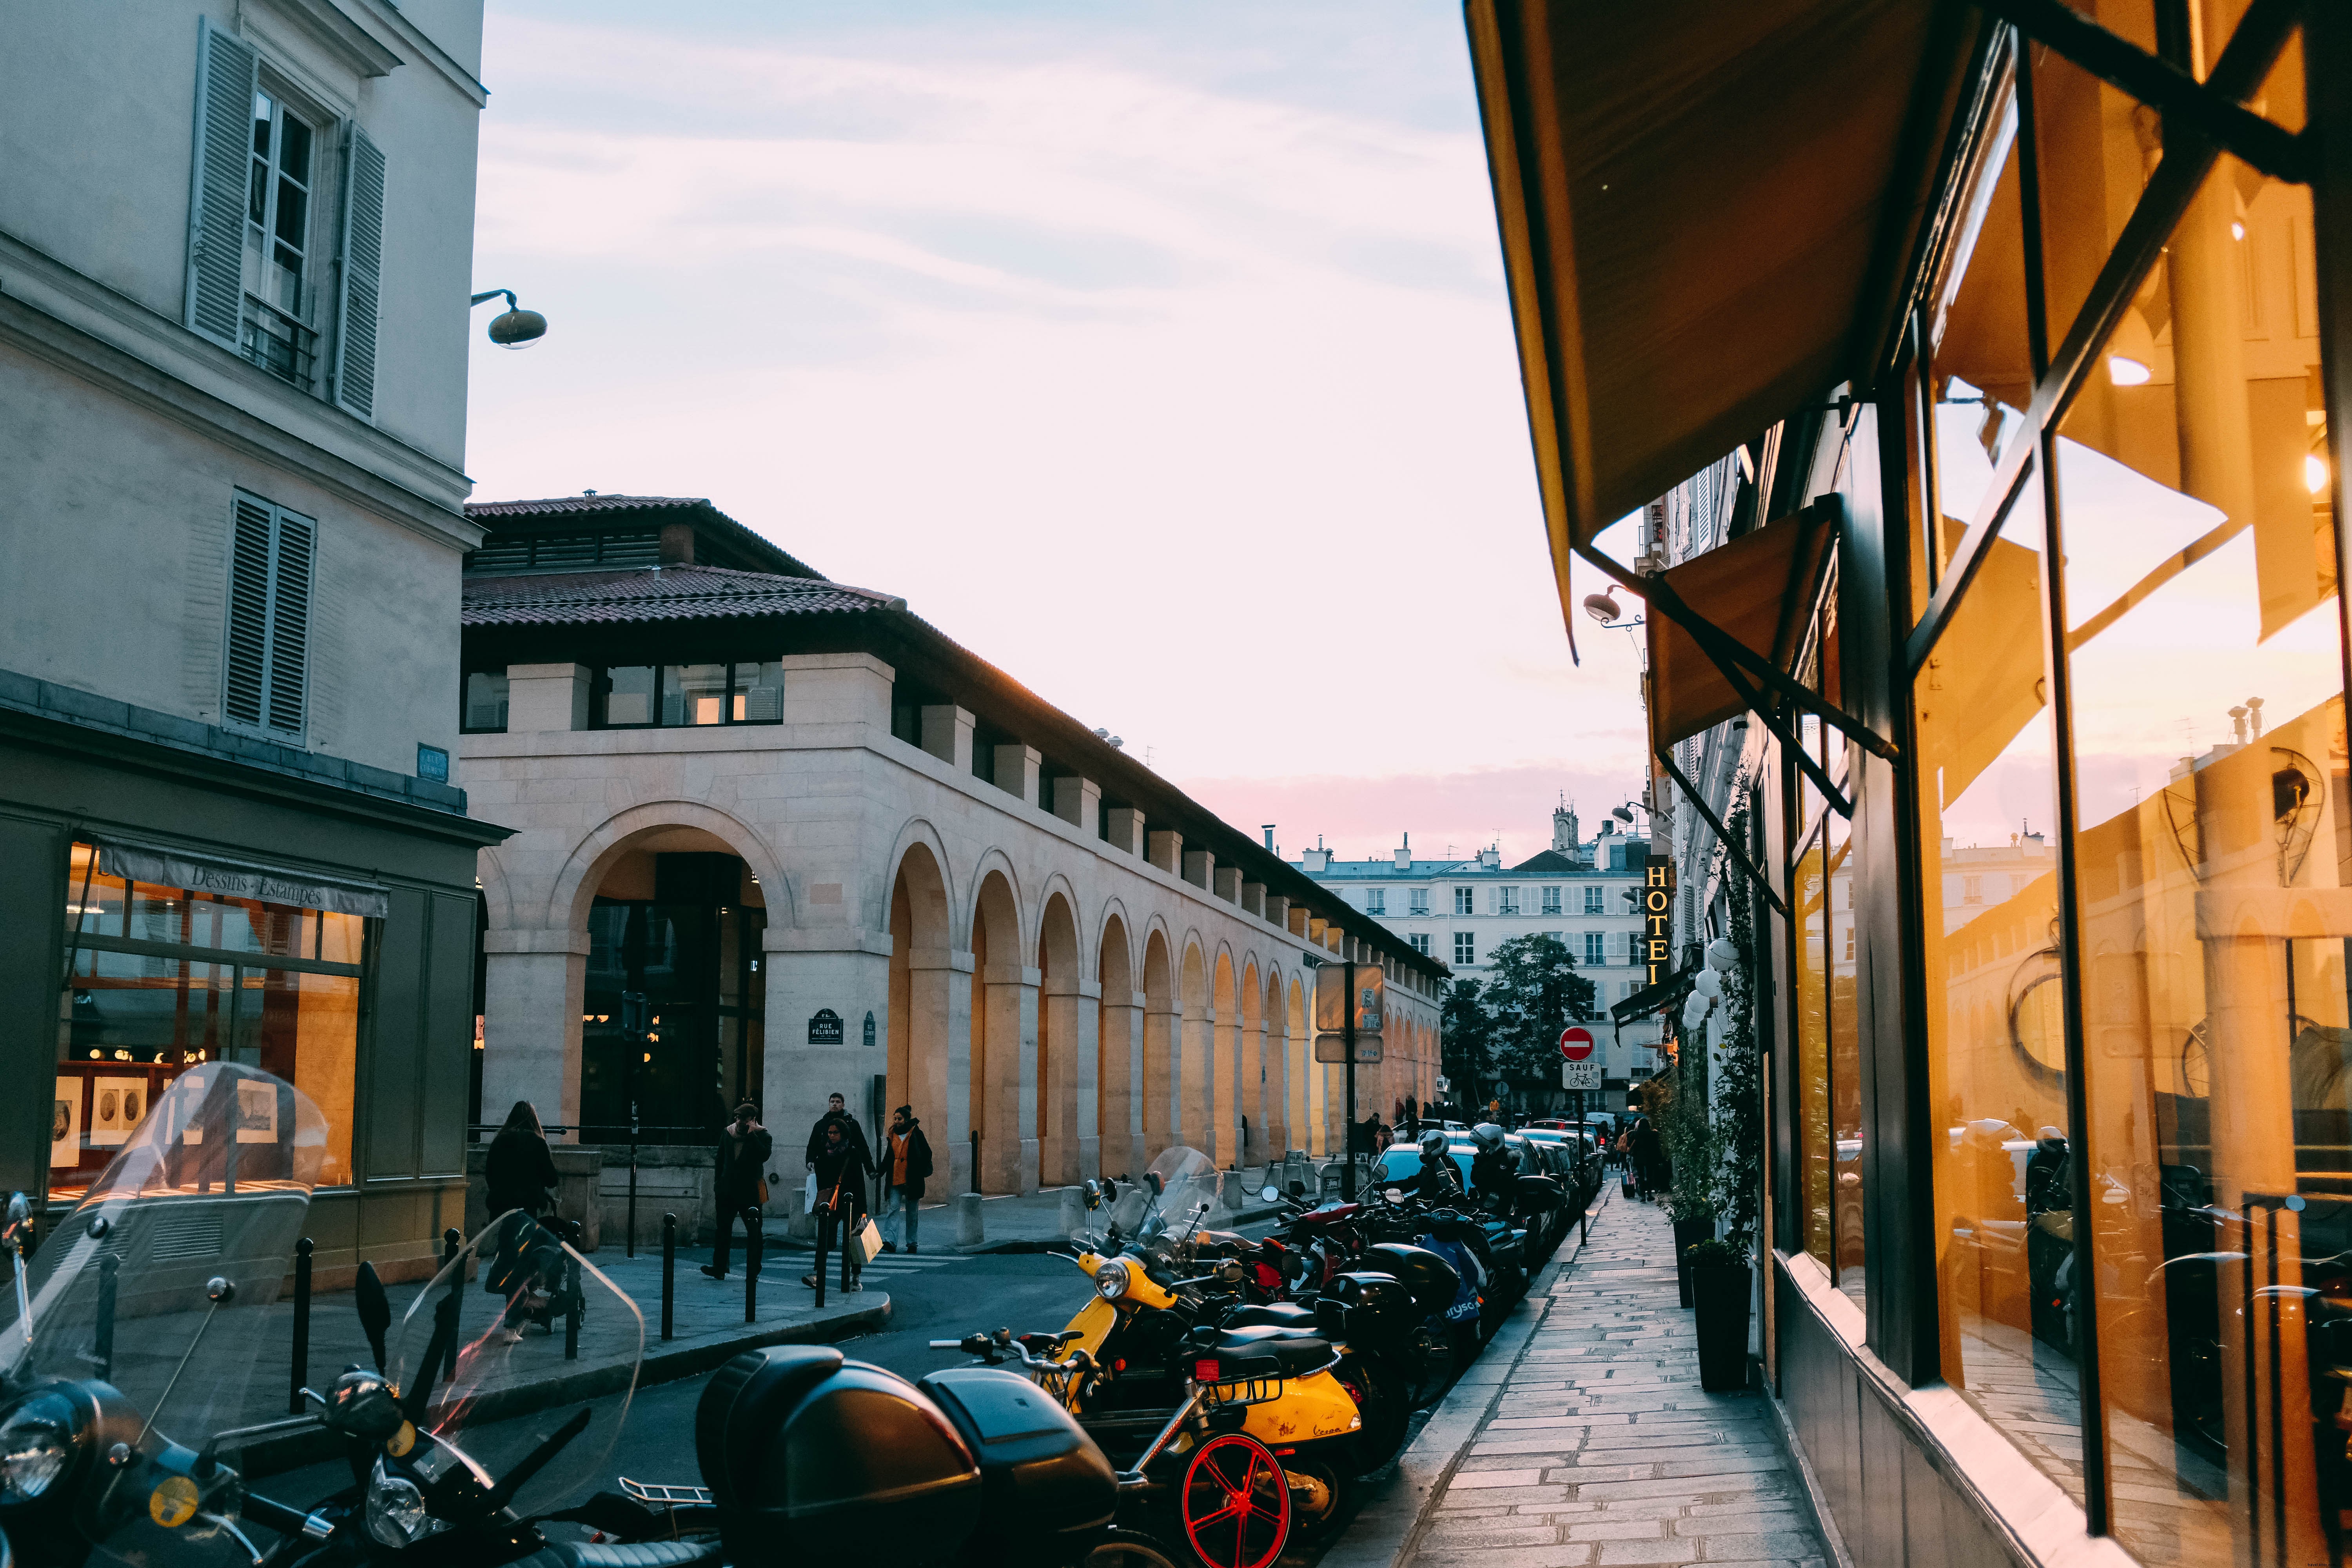 Ciclomotores estacionados em uma foto de rua parisiense